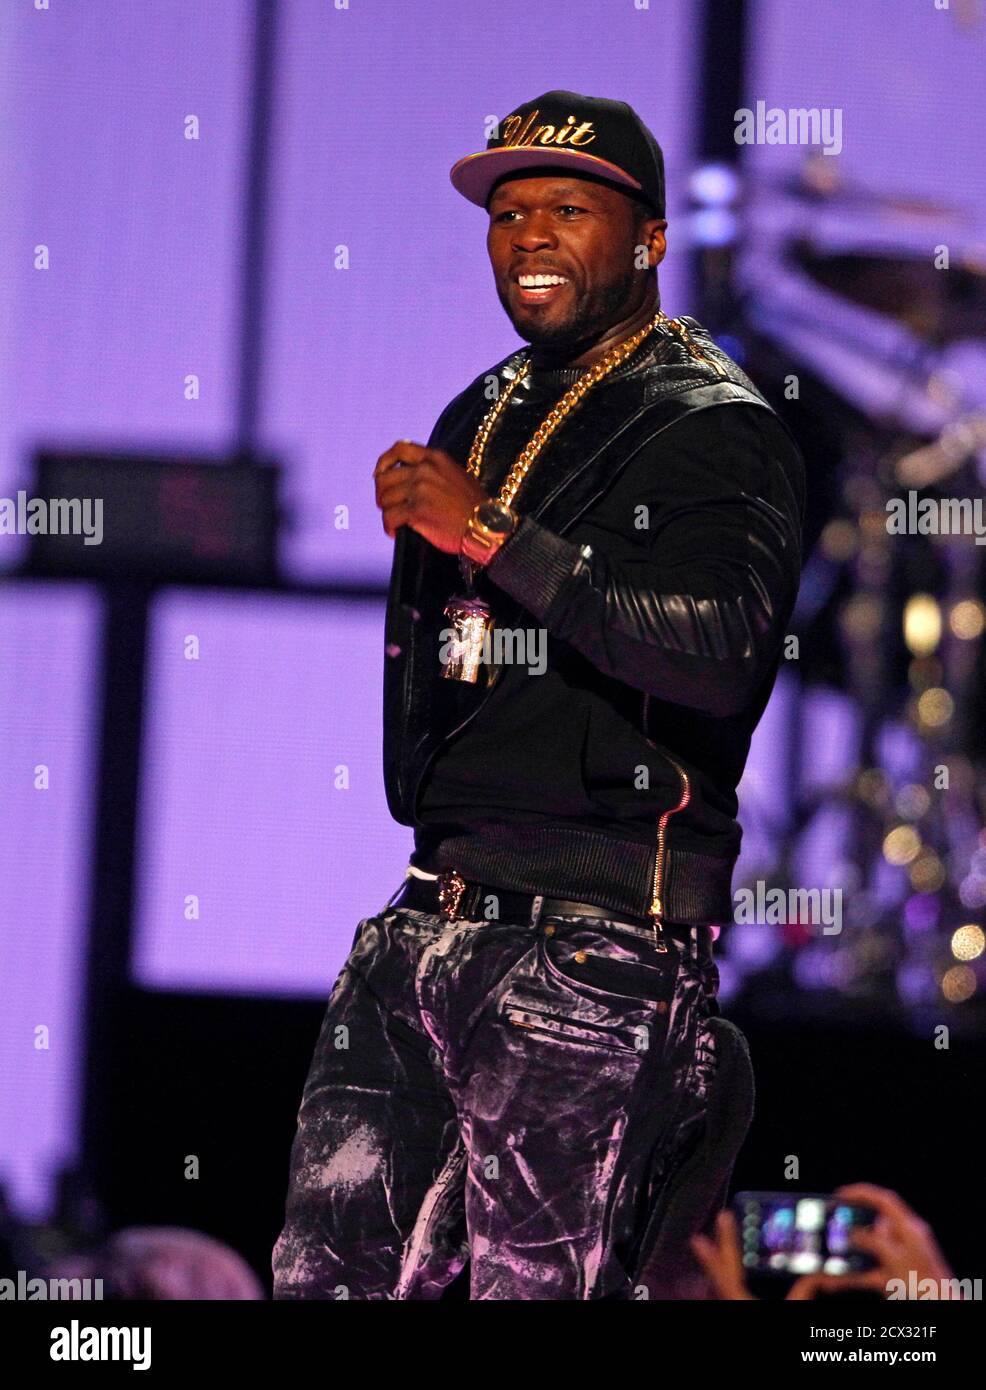 Rapper 50 cent se produit lors du festival de musique iHeartRadio 2014 à Las Vegas, Nevada, le 20 septembre 2014. REUTERS/Steve Marcus (ETATS-UNIS - Tags: ENTERTAINMENT) Banque D'Images